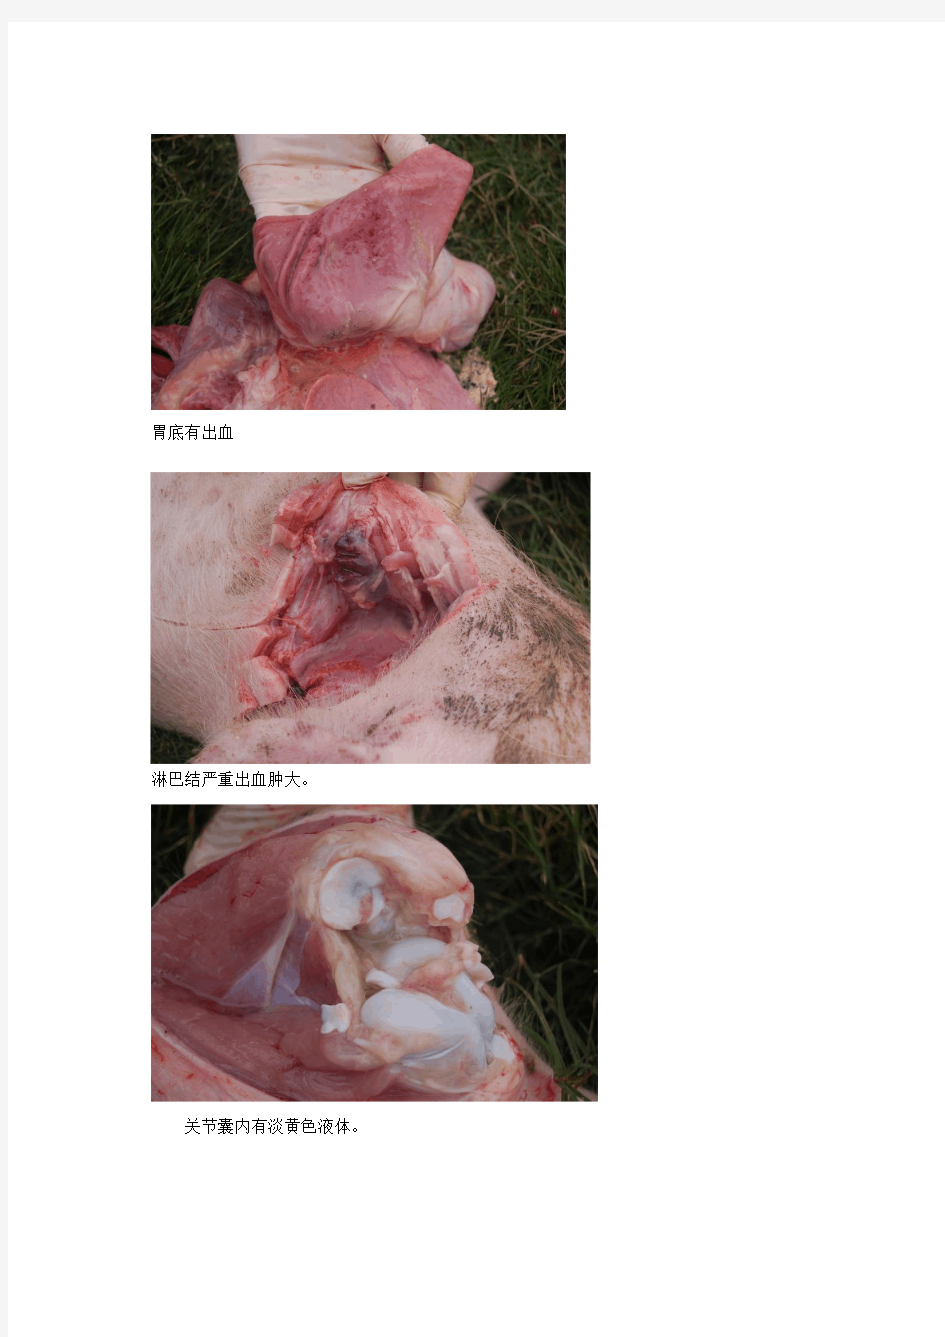 猪链球菌发病解剖图片